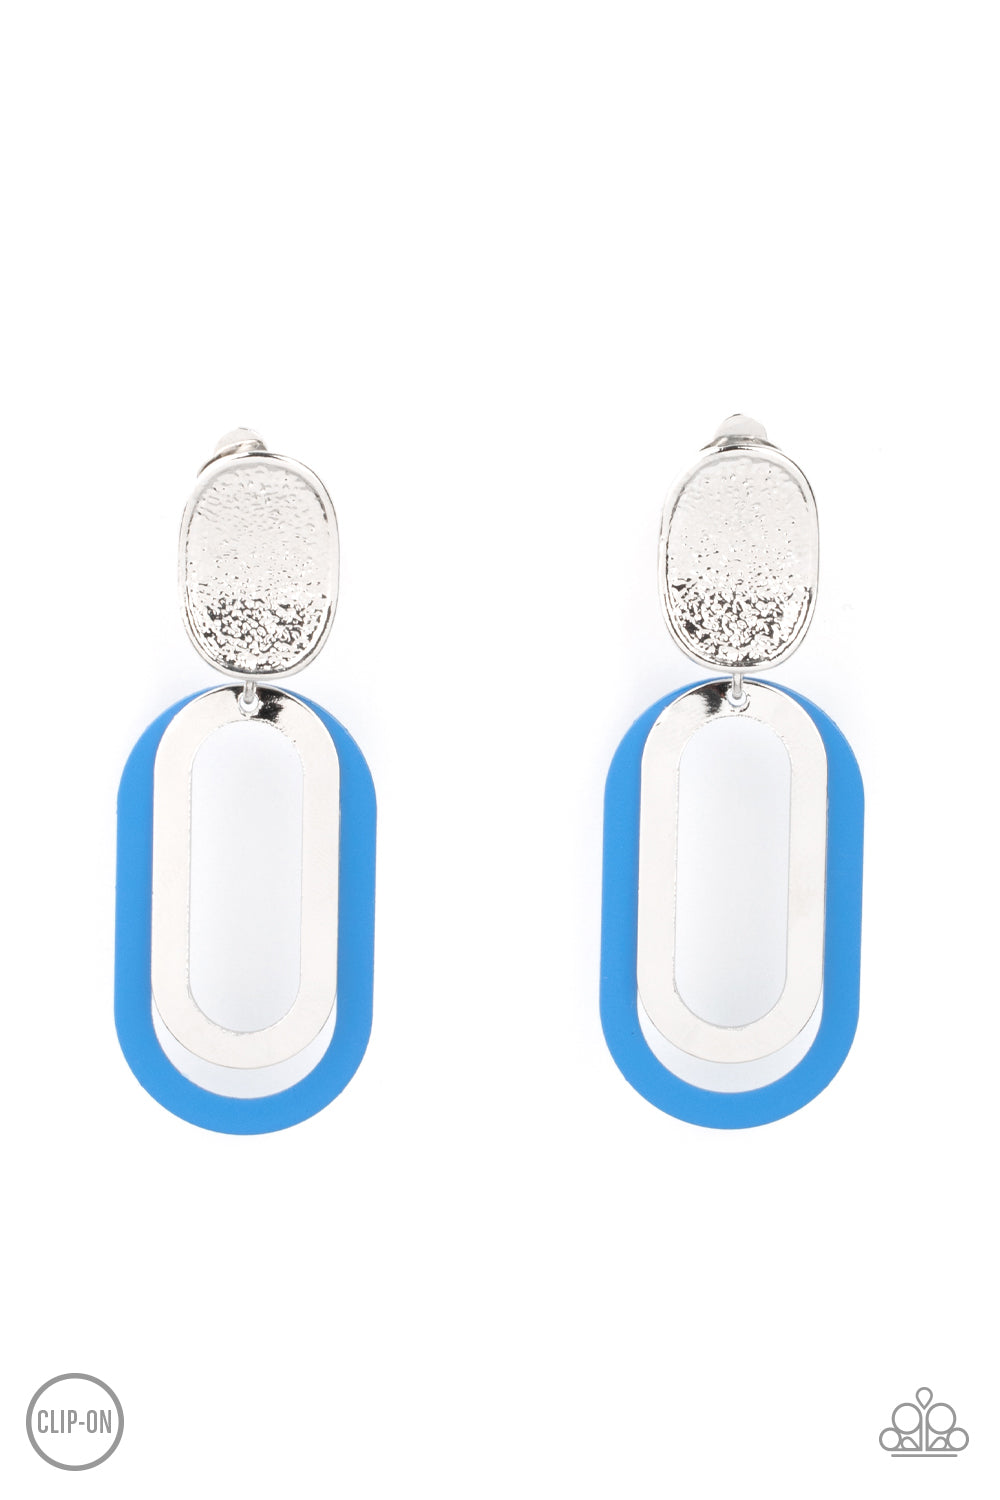 Melrose Mystery Blue Clip Earrings - Daria's Blings N Things